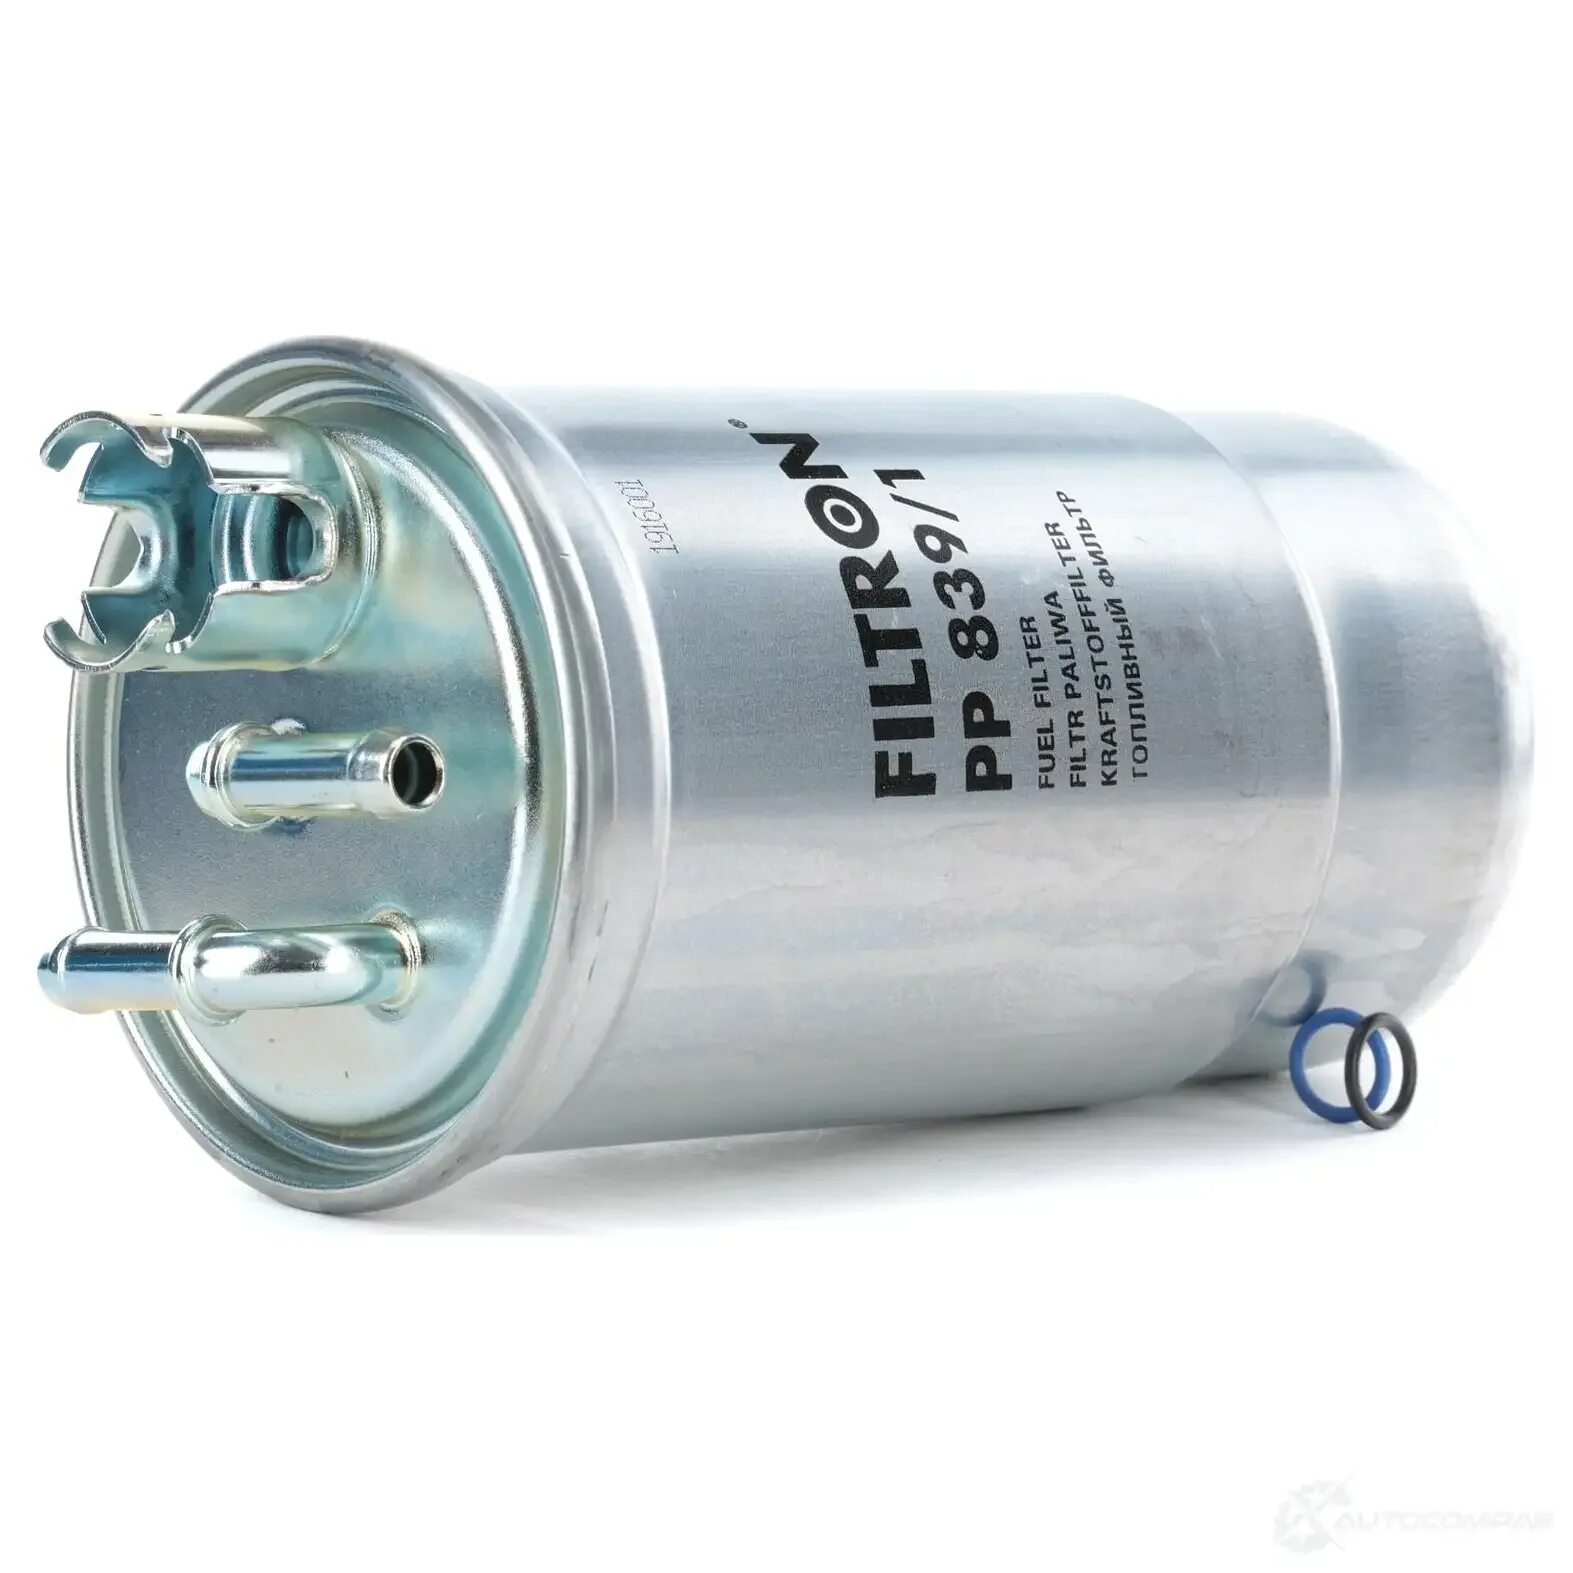 Топливный фильтр тди. FILTRON pp839. Топливный фильтр Фольксваген Бора 1.6. PP 839/1 топливный фильтр Денкерман. Топливный фильтр Манн Хуммель 2,0 TDI.